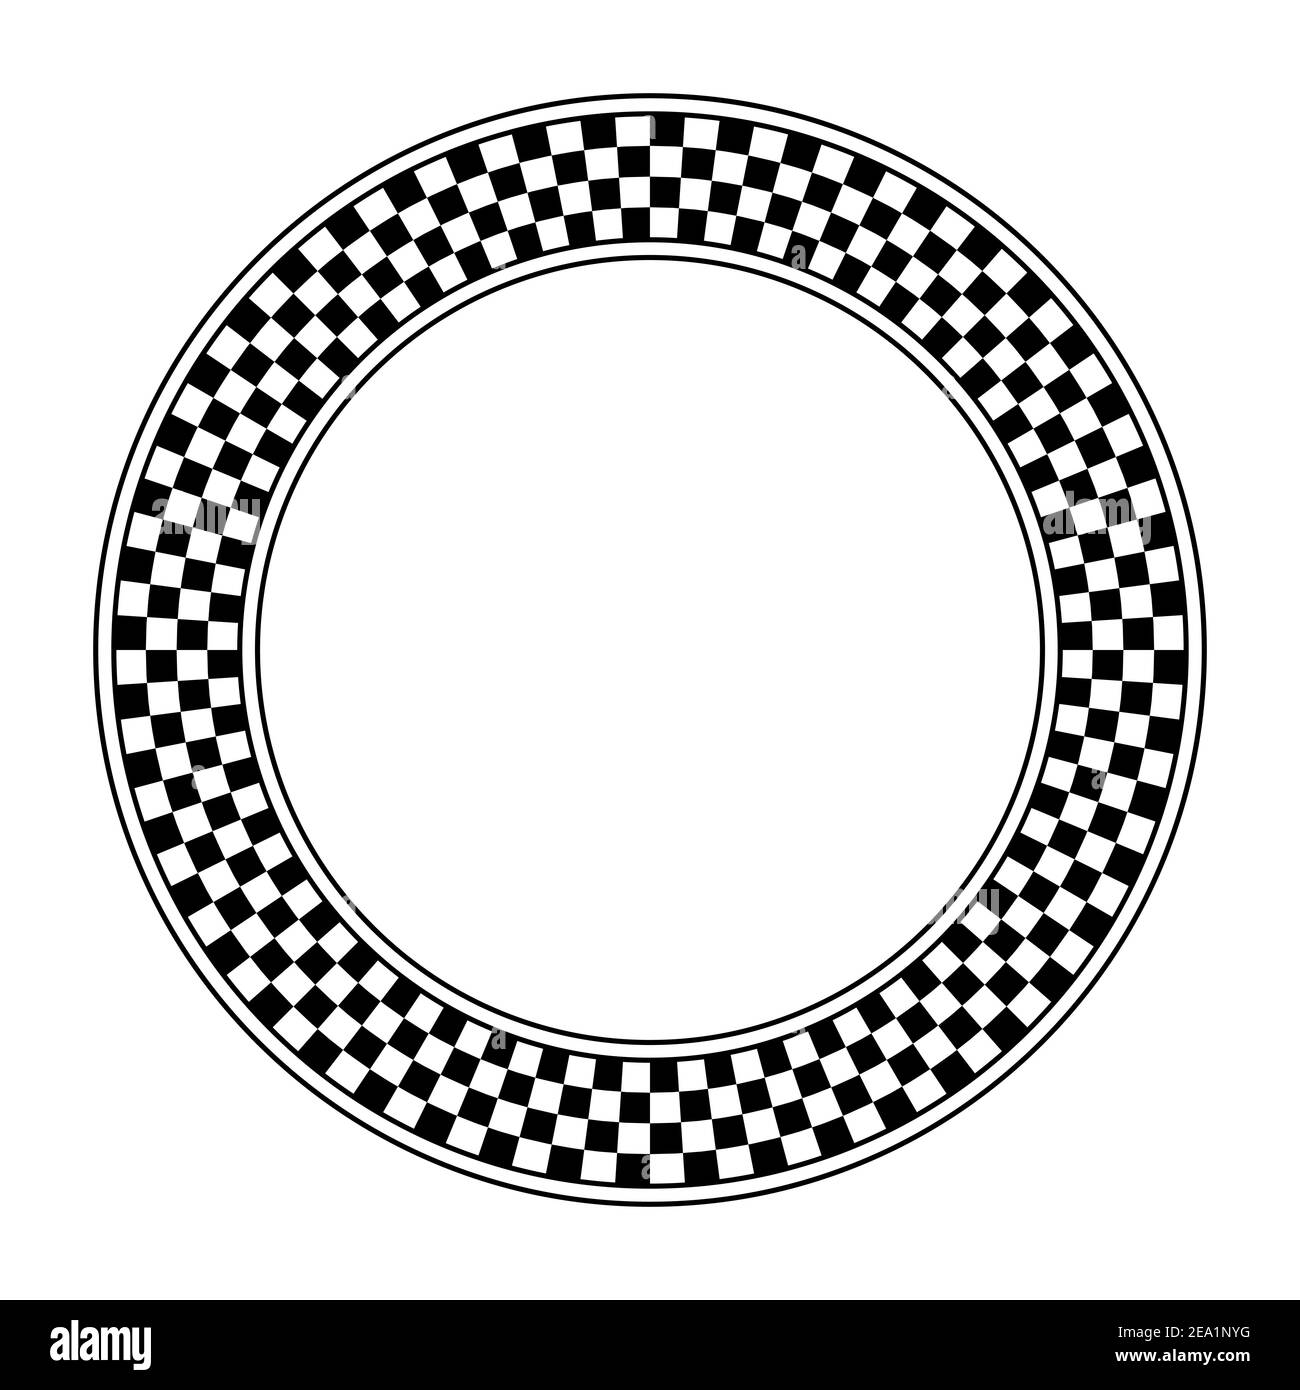 Schema a scacchiera, cornice circolare. Cornice rotonda a scacchi, composta da un diagramma a scacchiera costituito da quadrati alternati in bianco e nero. Foto Stock